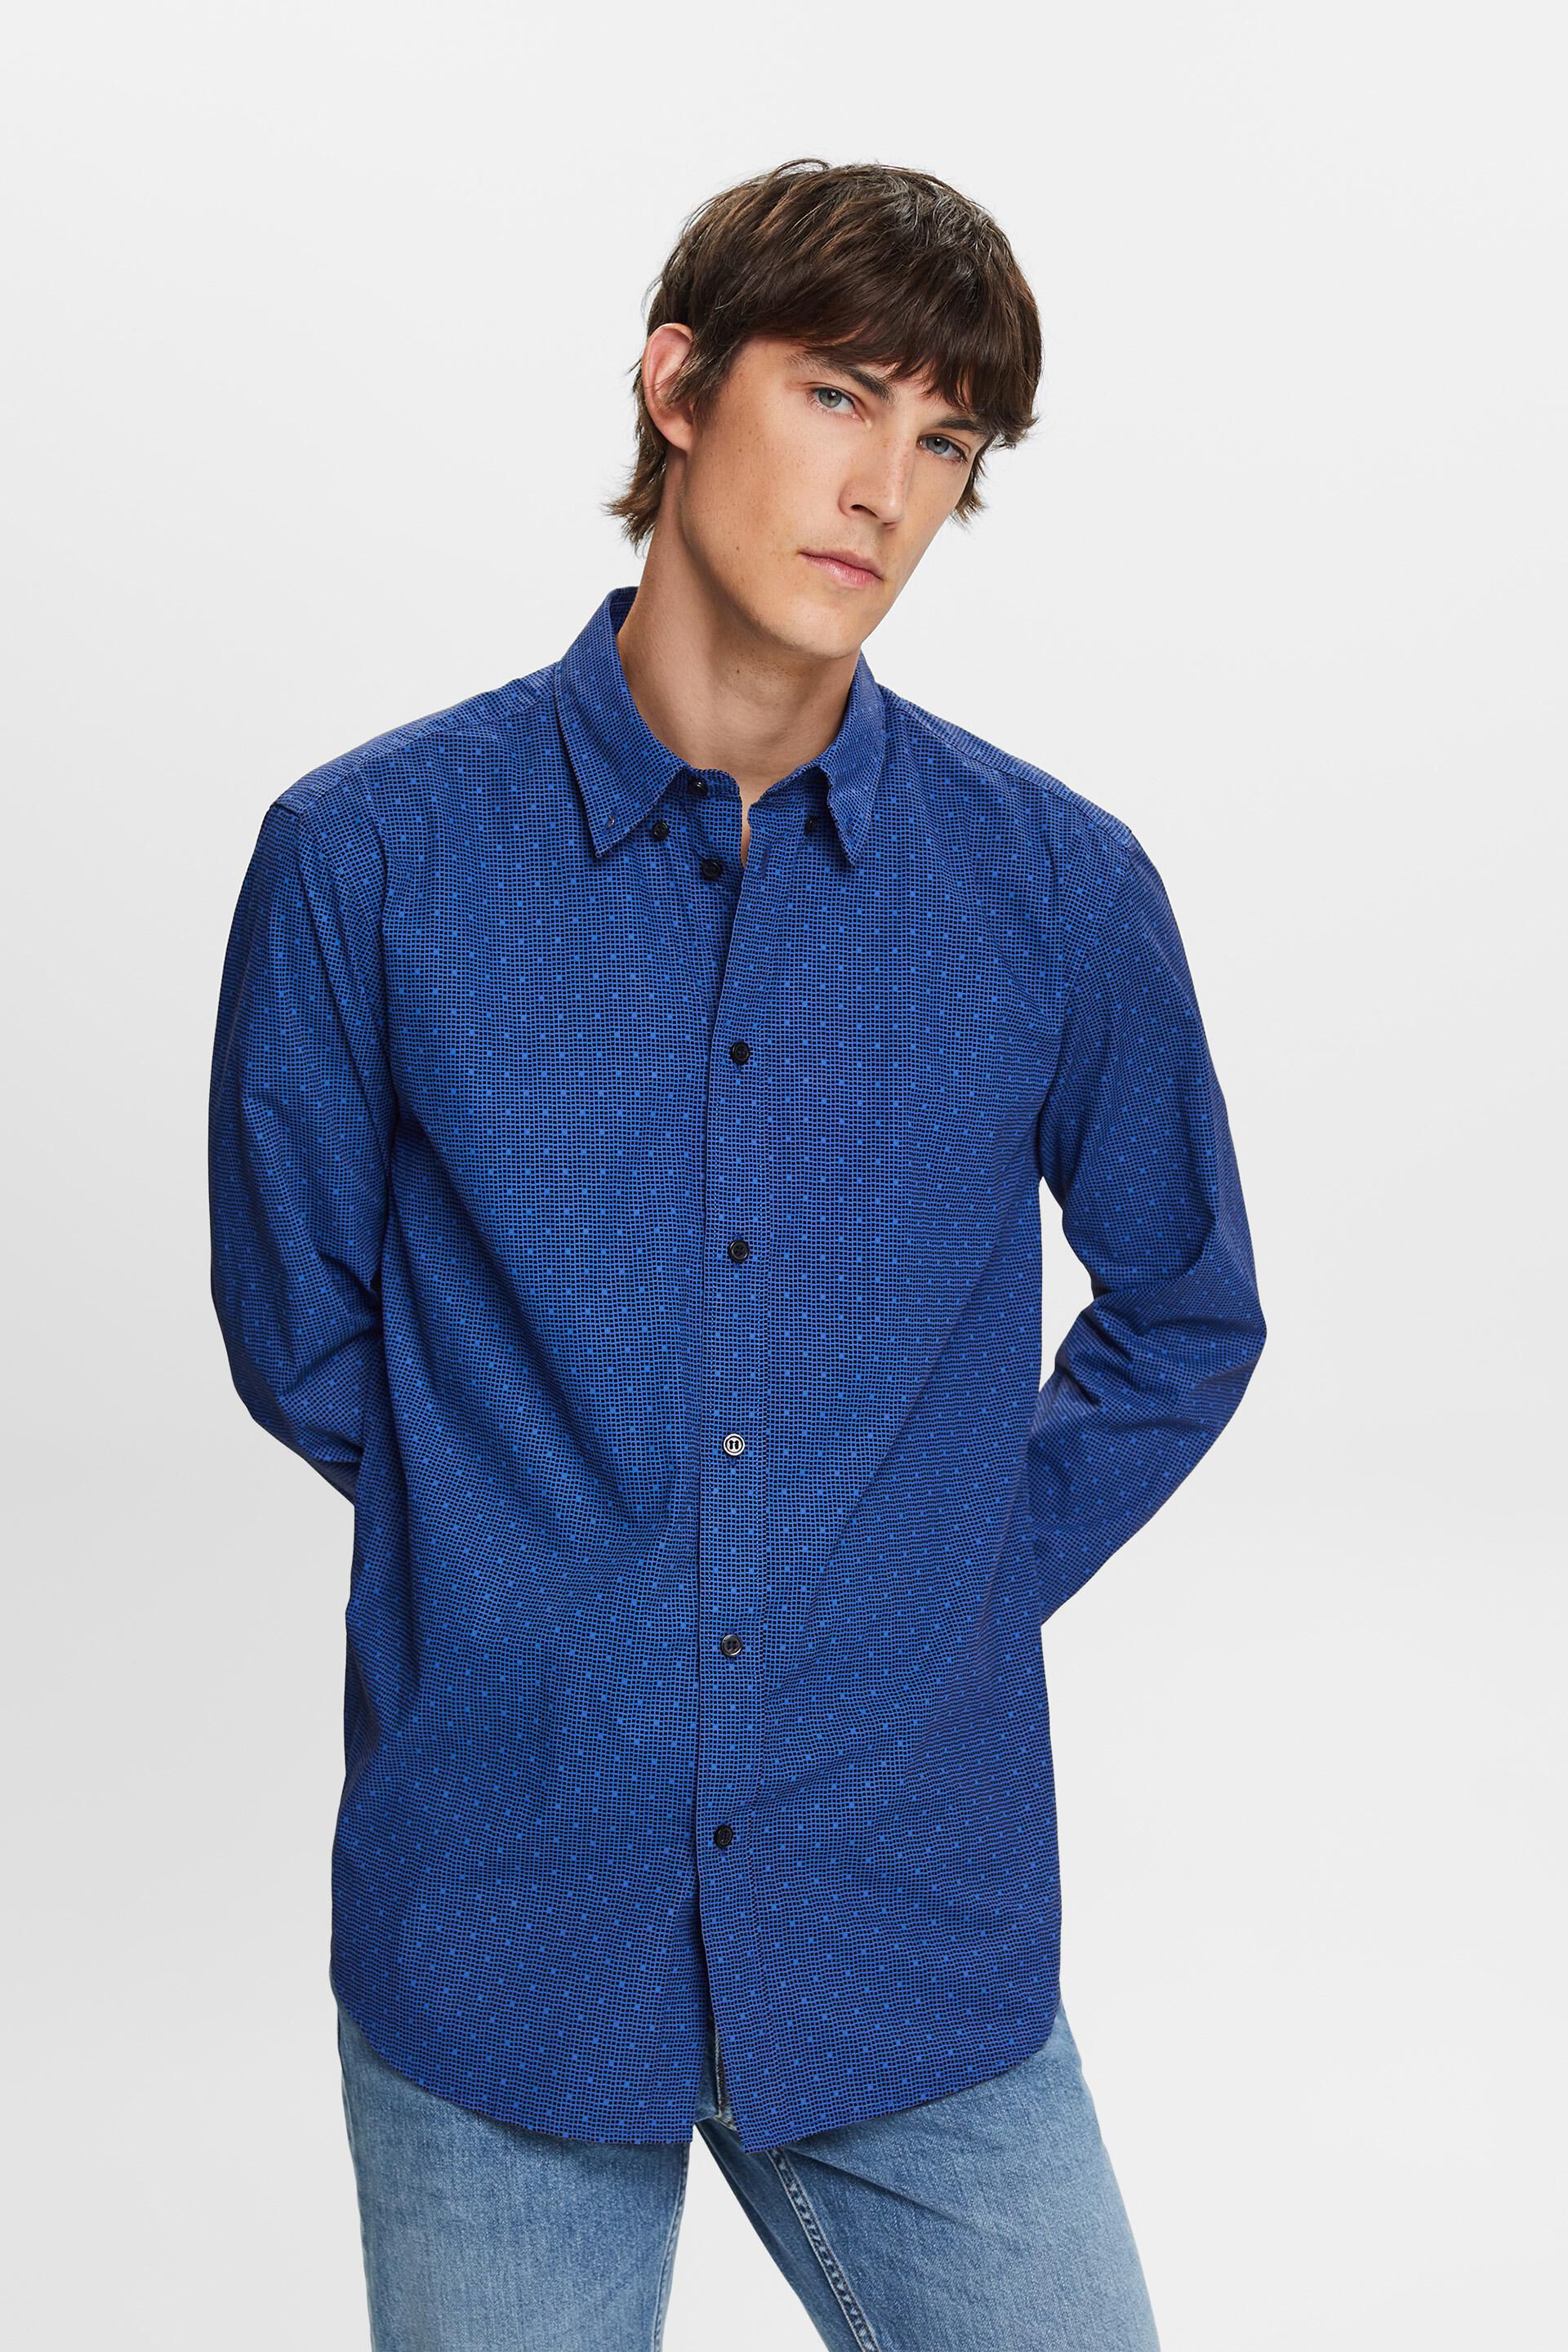 Esprit cotton 100% shirt, Patterned button-down